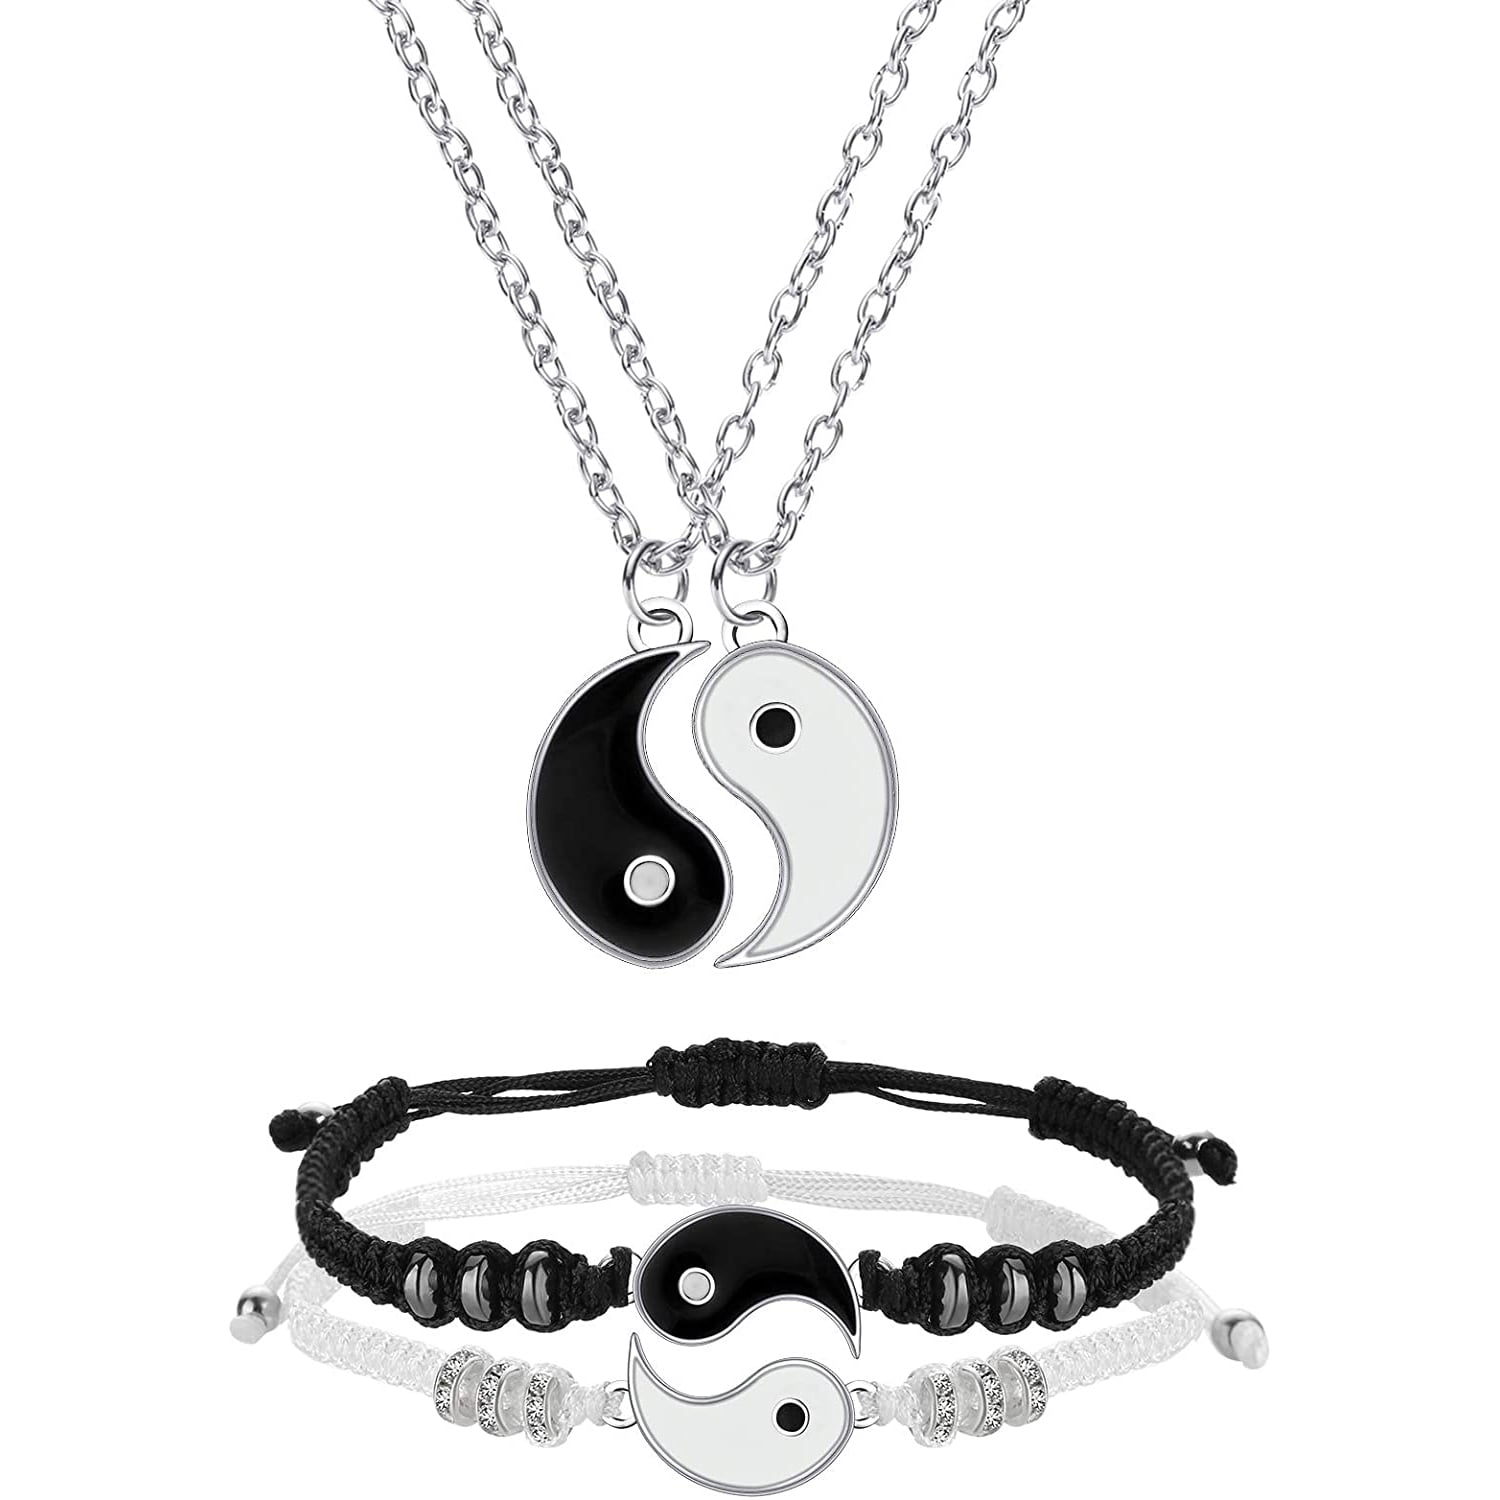 Details about   LOL Surprise Best Friends Jewelry Set With 2 Necklaces 2 Bracelets 